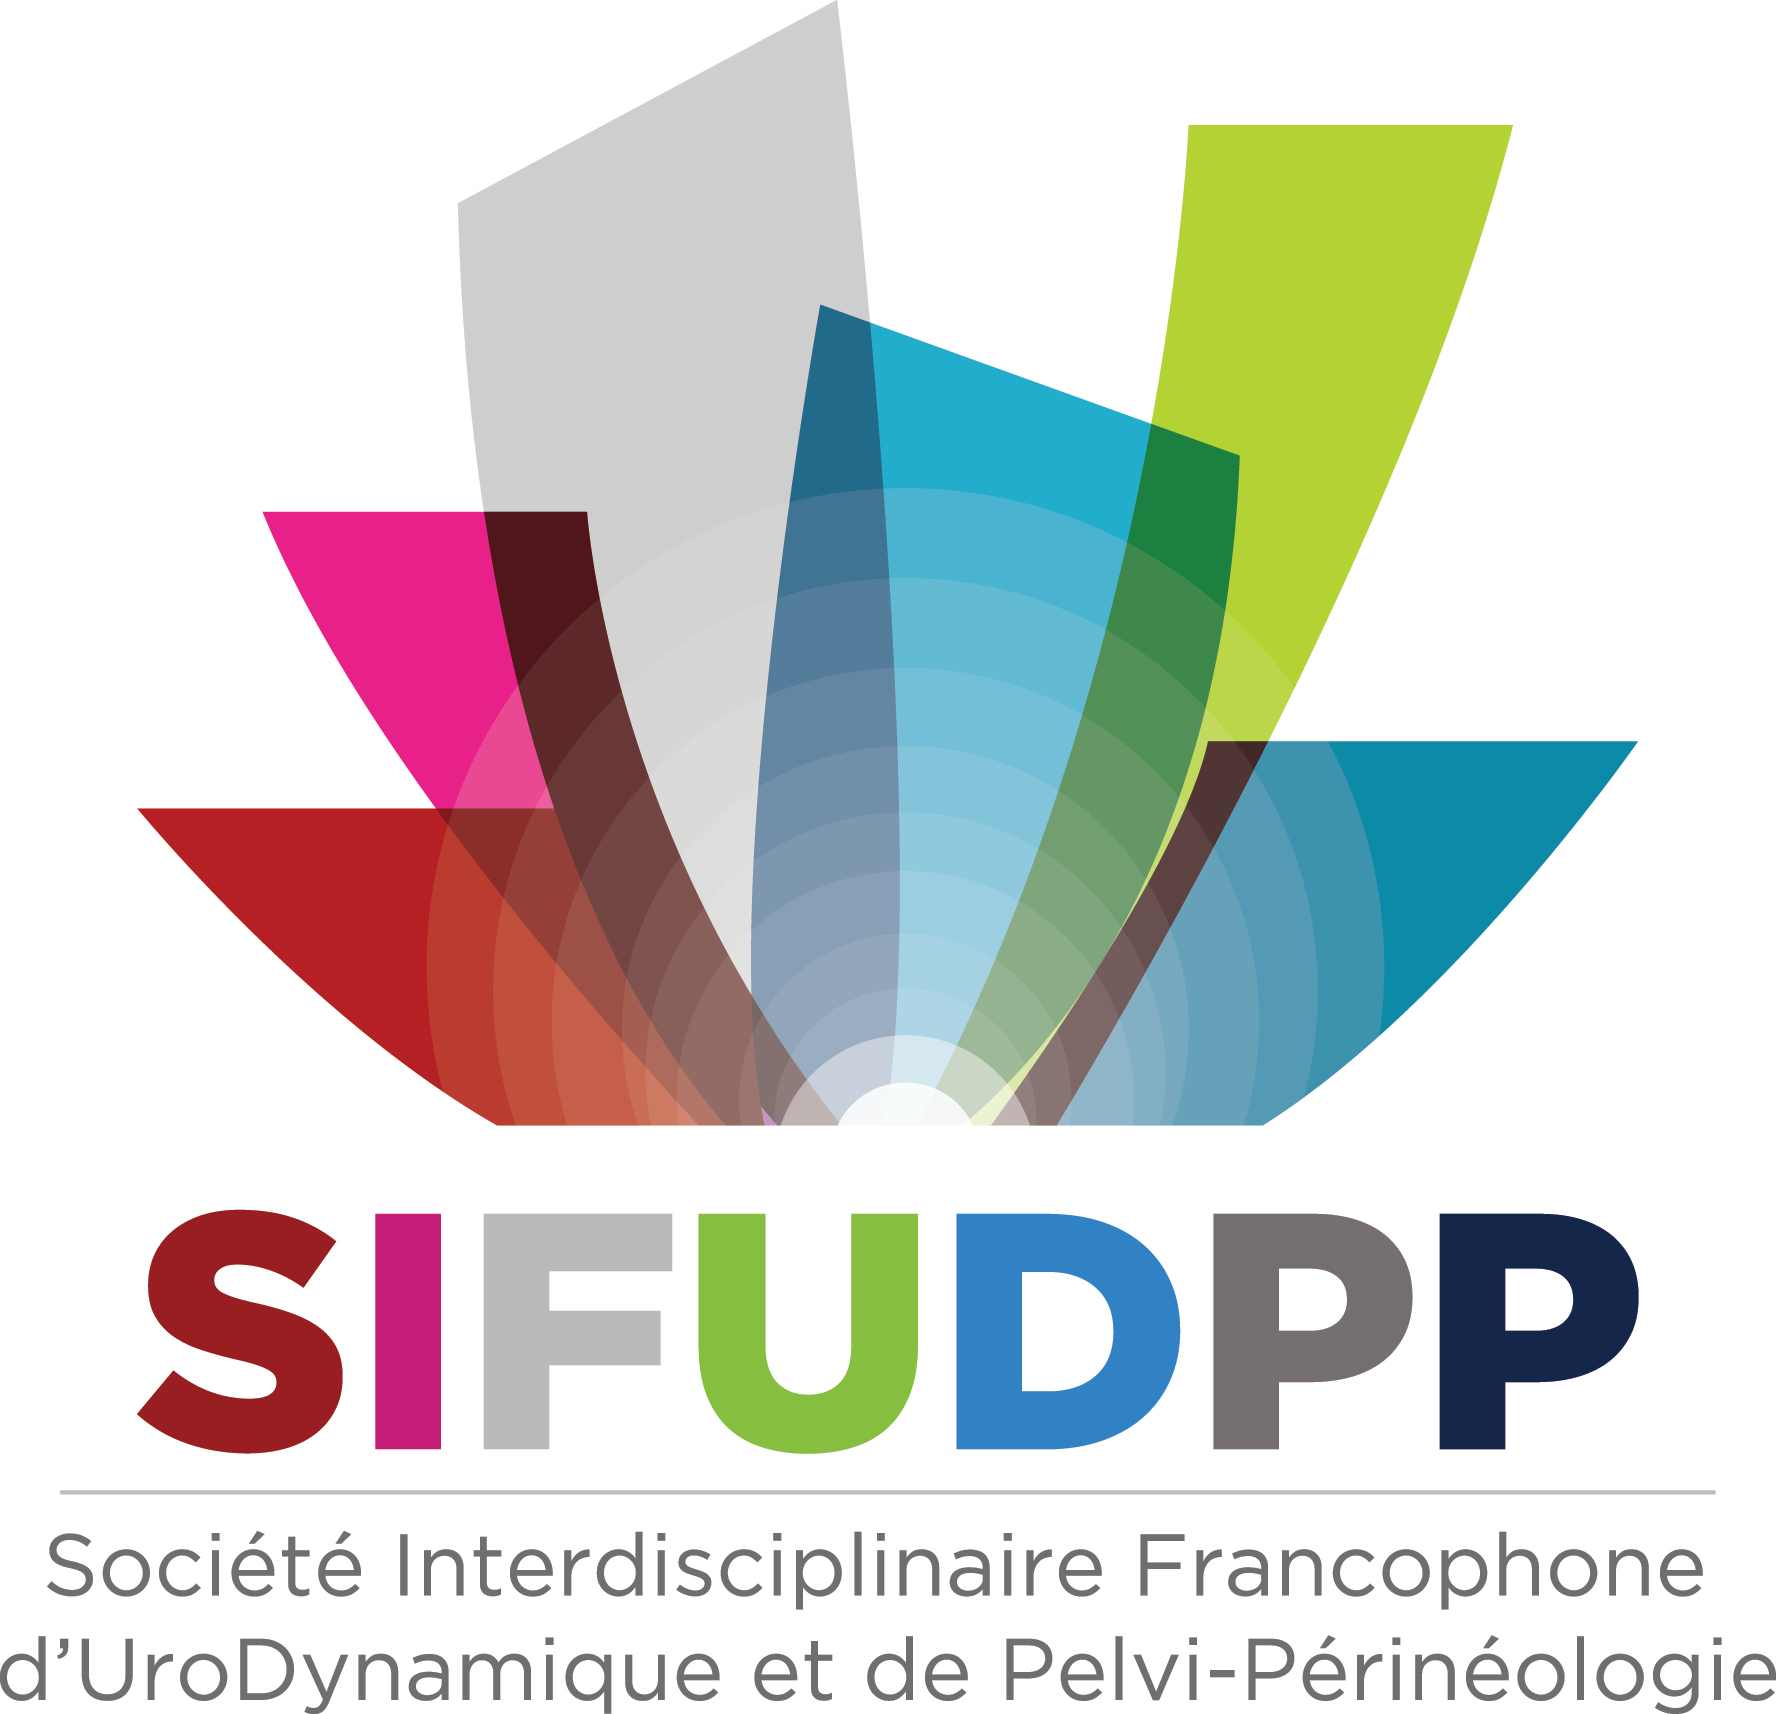 SIFUD-PP Paris 2016 : Ouverture de la journée et introduction